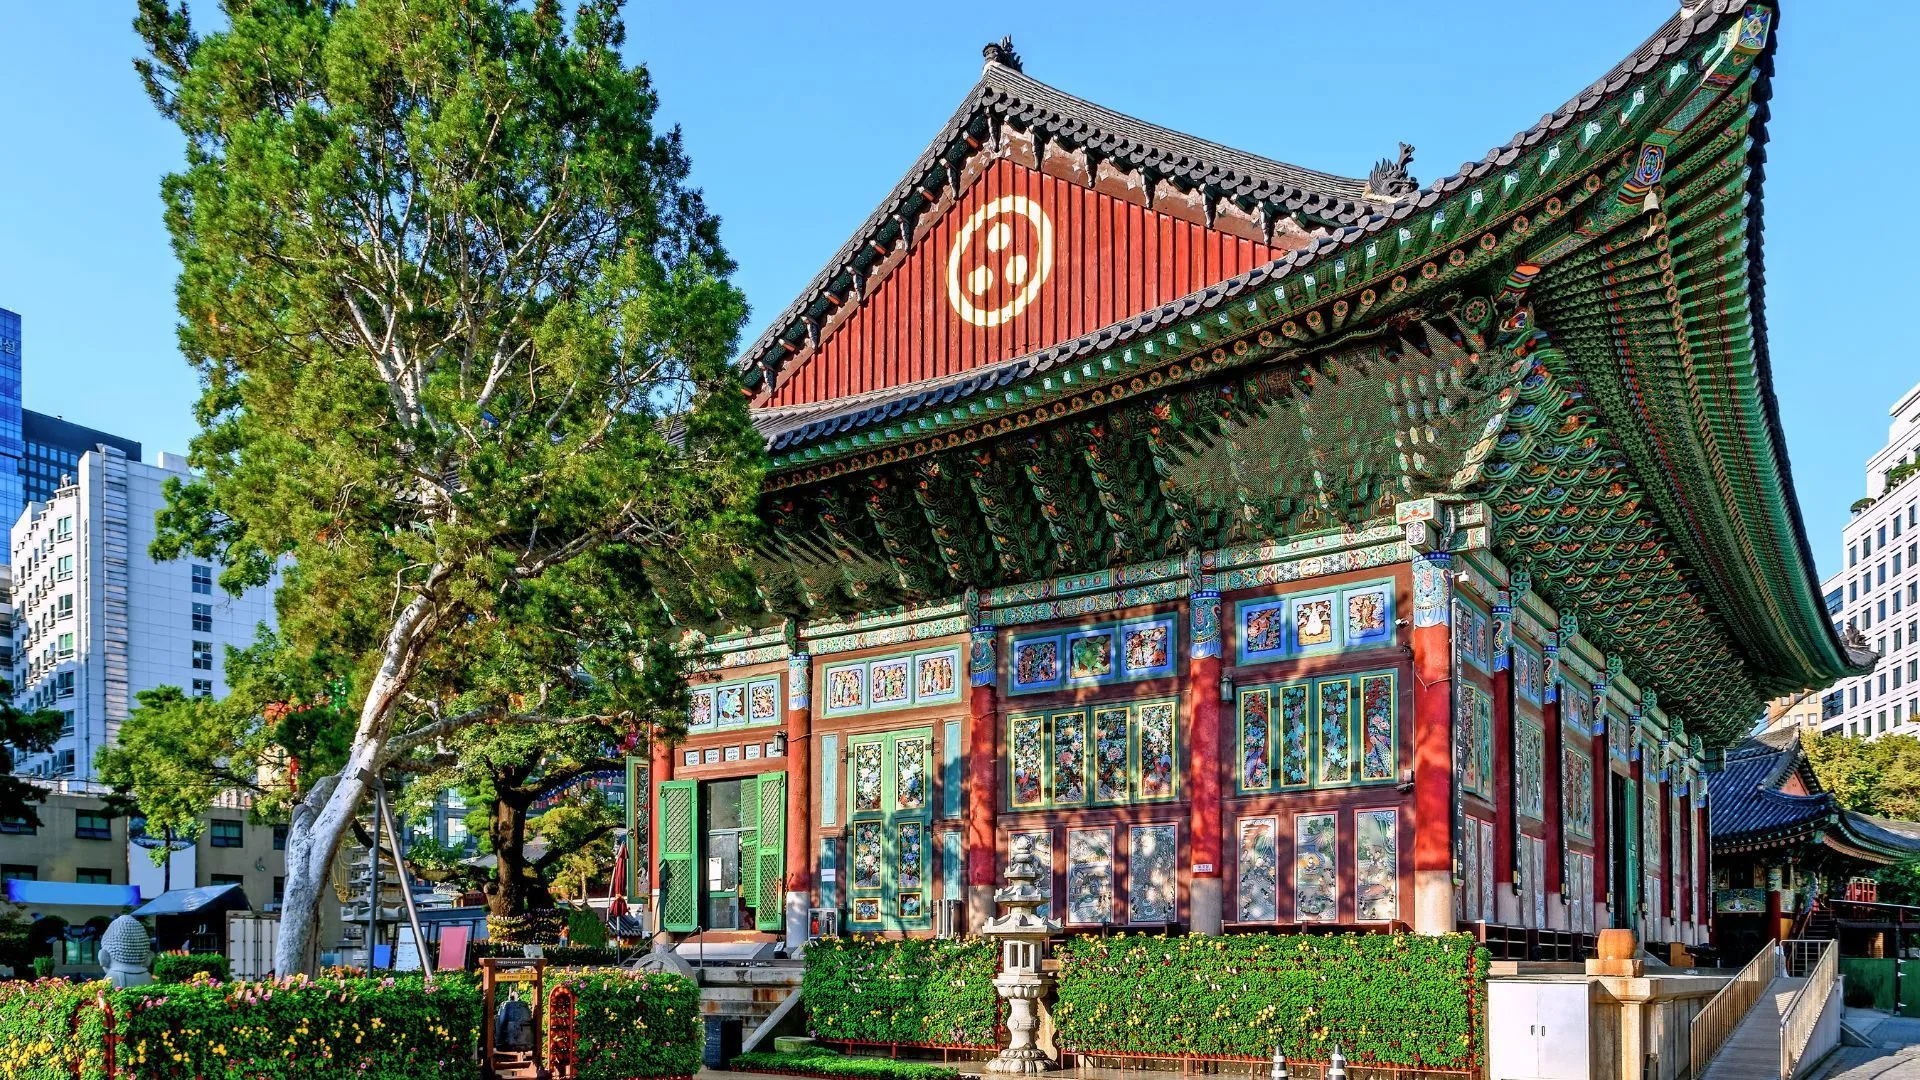 Đền Jogyesa Đền Jogyesa Tín dụng hình ảnh: Zoran Karapancev / Shutterstock Jogyesa, ngôi chùa trung tâm của Dòng Phật giáo Jogye của Hàn Quốc, ban đầu được thành lập với tên gọi chùa Gakhwangsa vào năm 1910 trong thời kỳ Nhật Bản chiếm đóng. Không giống như nhiều ngôi chùa nổi tiếng của Hàn Quốc nằm trên núi, Jogyesa nổi bật giữa cảnh quan đô thị của Seoul.  Được trang trí bằng màu đỏ và vàng, Jogyesa mang đến trải nghiệm lưu trú độc đáo trong chùa, tập trung vào thiền định và thư giãn. Những người tham gia chương trình tham gia vào các hoạt động như lễ Phật, chia sẻ công việc, tham gia trà đạo và làm đèn lồng hoa sen. Ngoài ra, ngôi chùa còn là địa điểm quan trọng tổ chức Lễ hội đèn lồng hoa sen hàng năm để kỷ niệm ngày Phật đản. Trong lễ hội này, những chiếc đèn lồng rực rỡ chiếu sáng cả ngôi chùa và các con phố chính của Seoul, tạo nên không khí lễ hội.